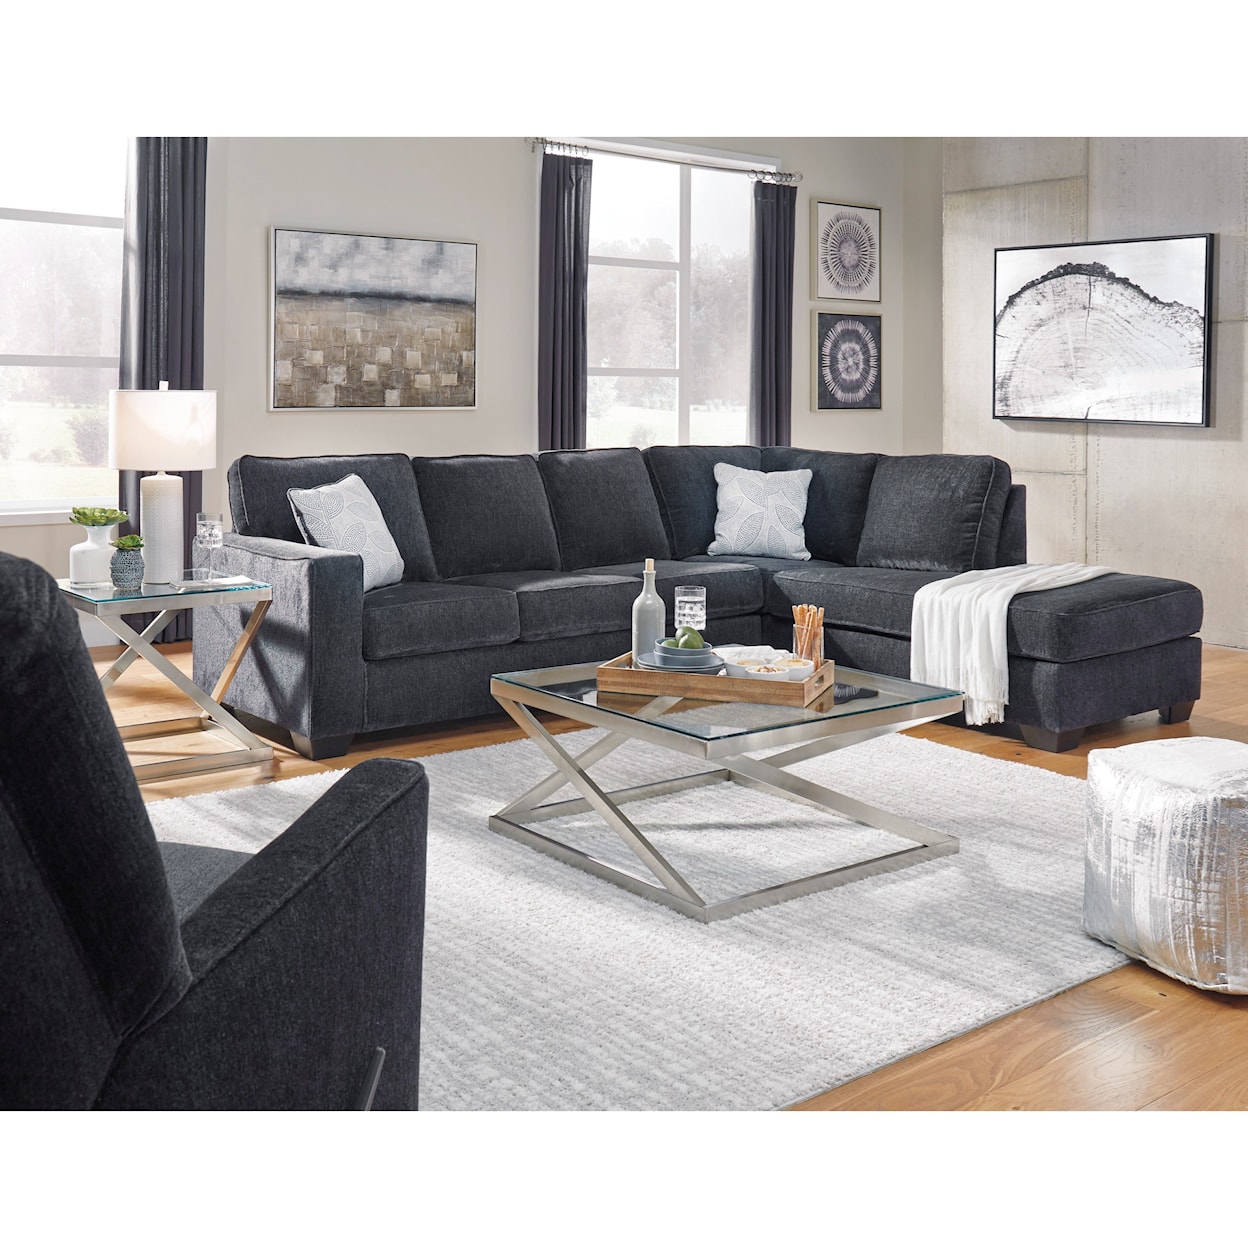 Ashley Furniture Signature Design Altari Living Room Group